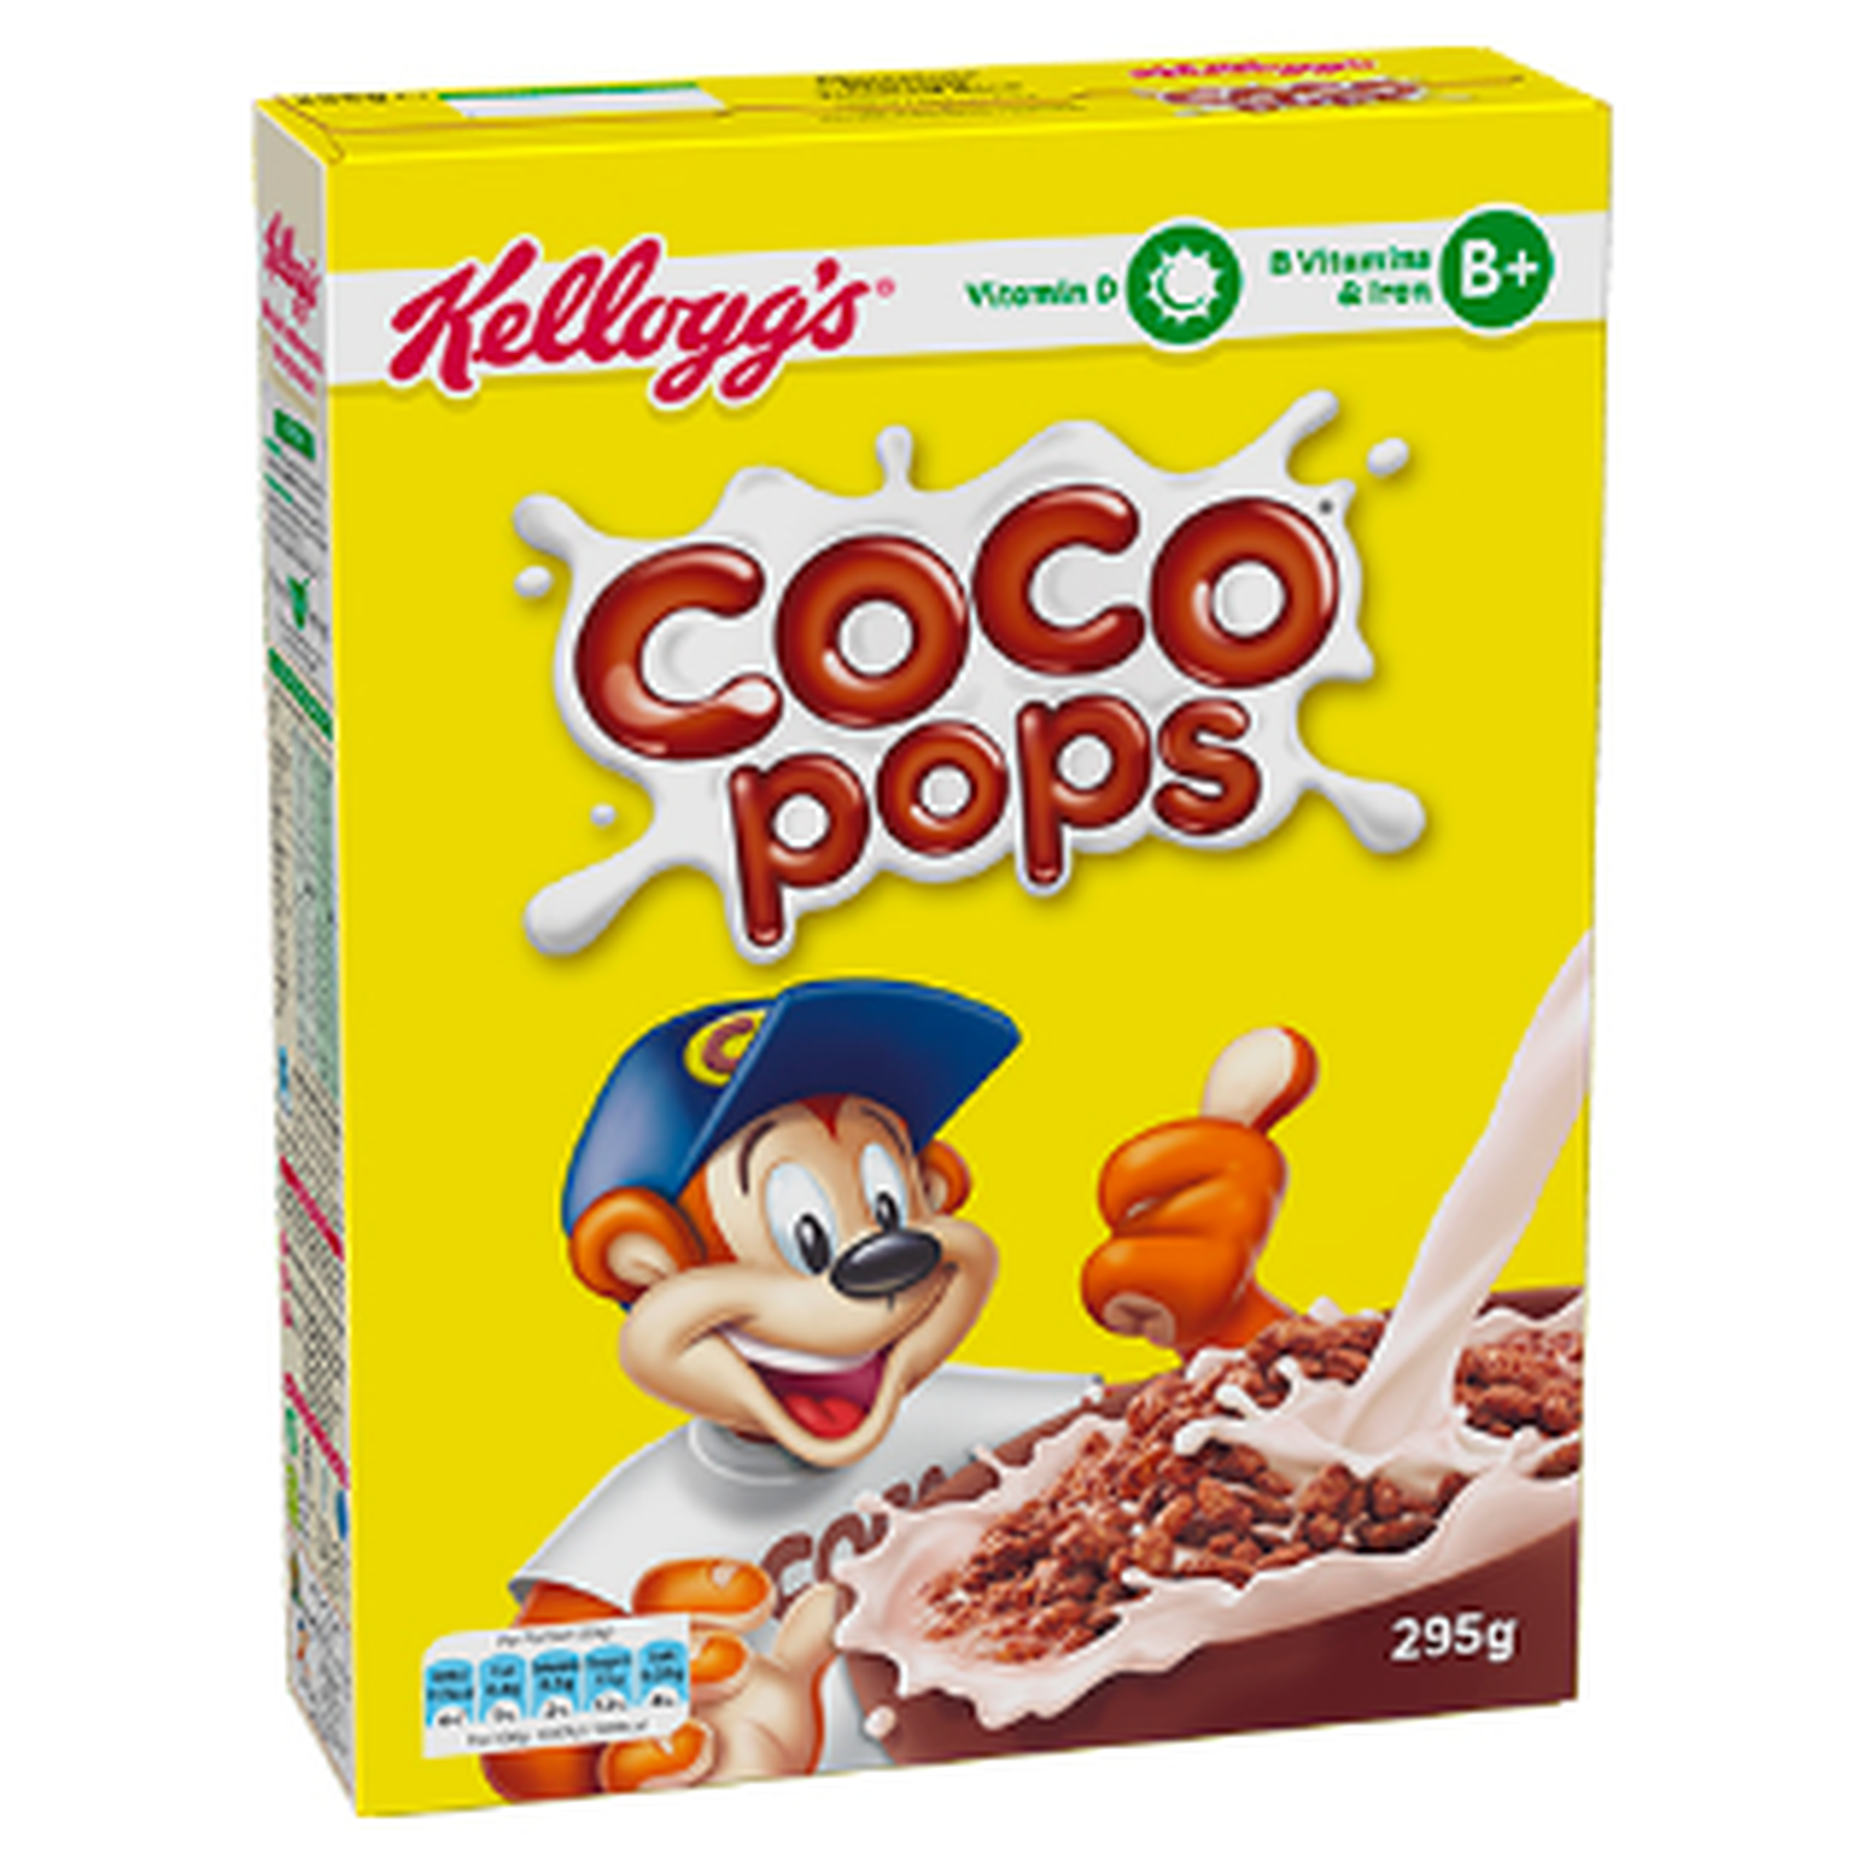 Kellogg's Coco Pops.